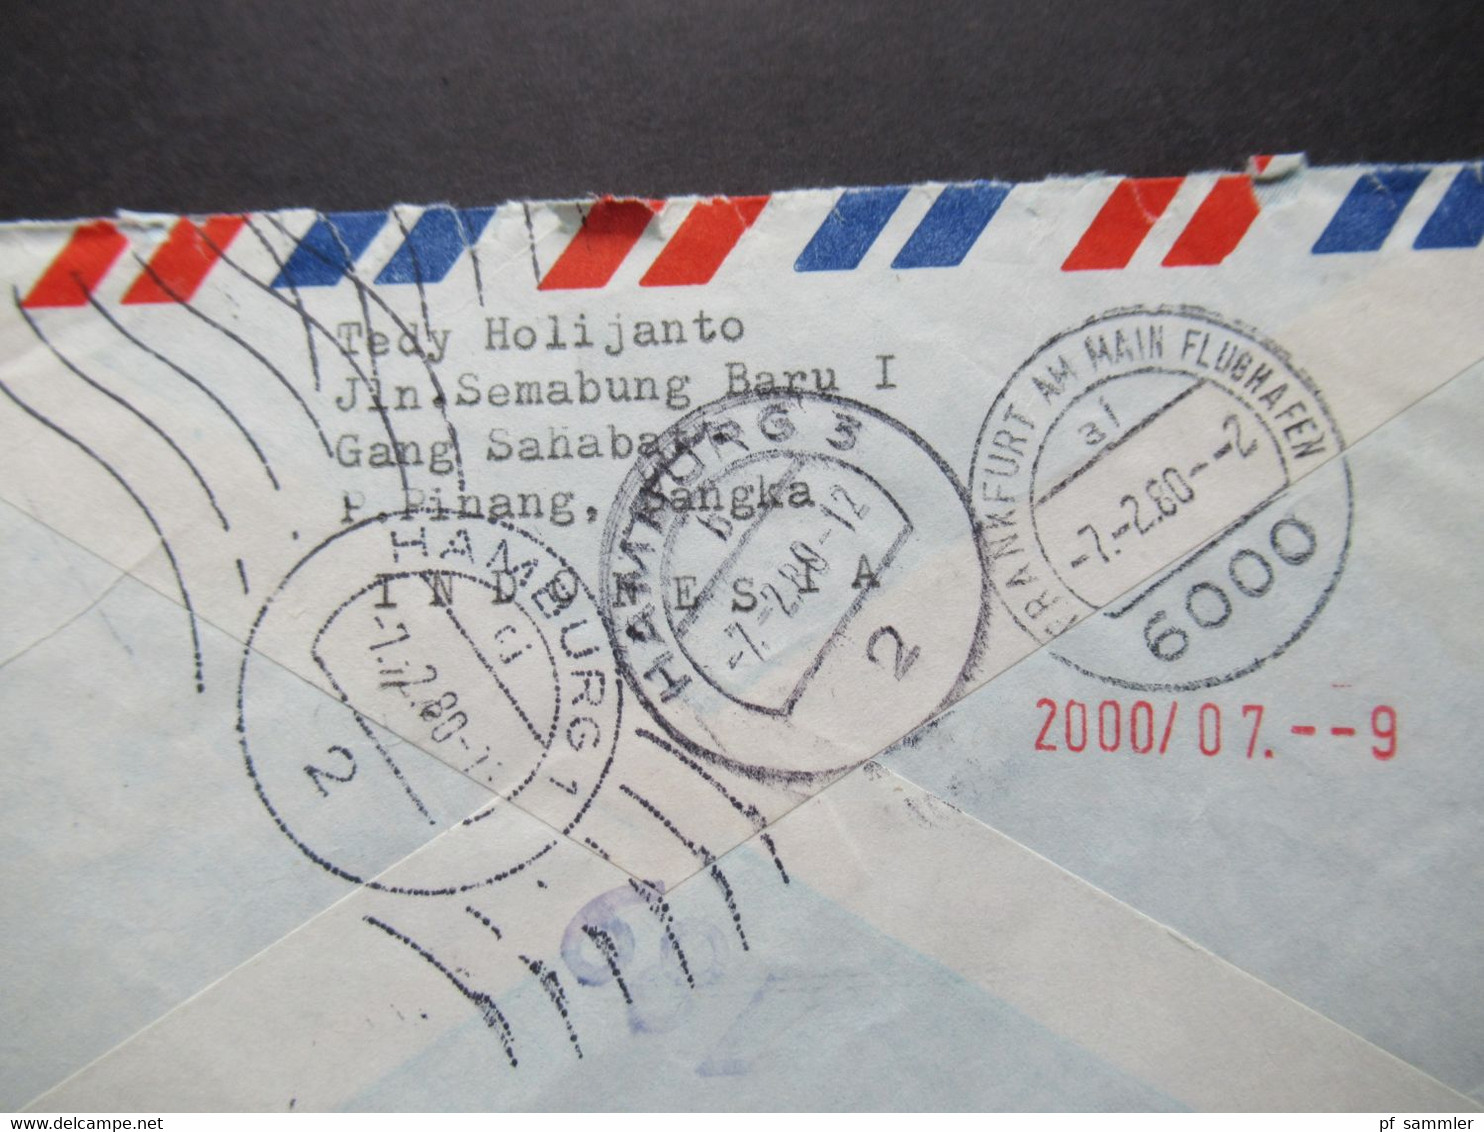 Indonesien 1980 By Air Mail Expres Pinang - Hamburg über Frankfurt Flughafen Rückseitig Weitere Stempel - Indonésie